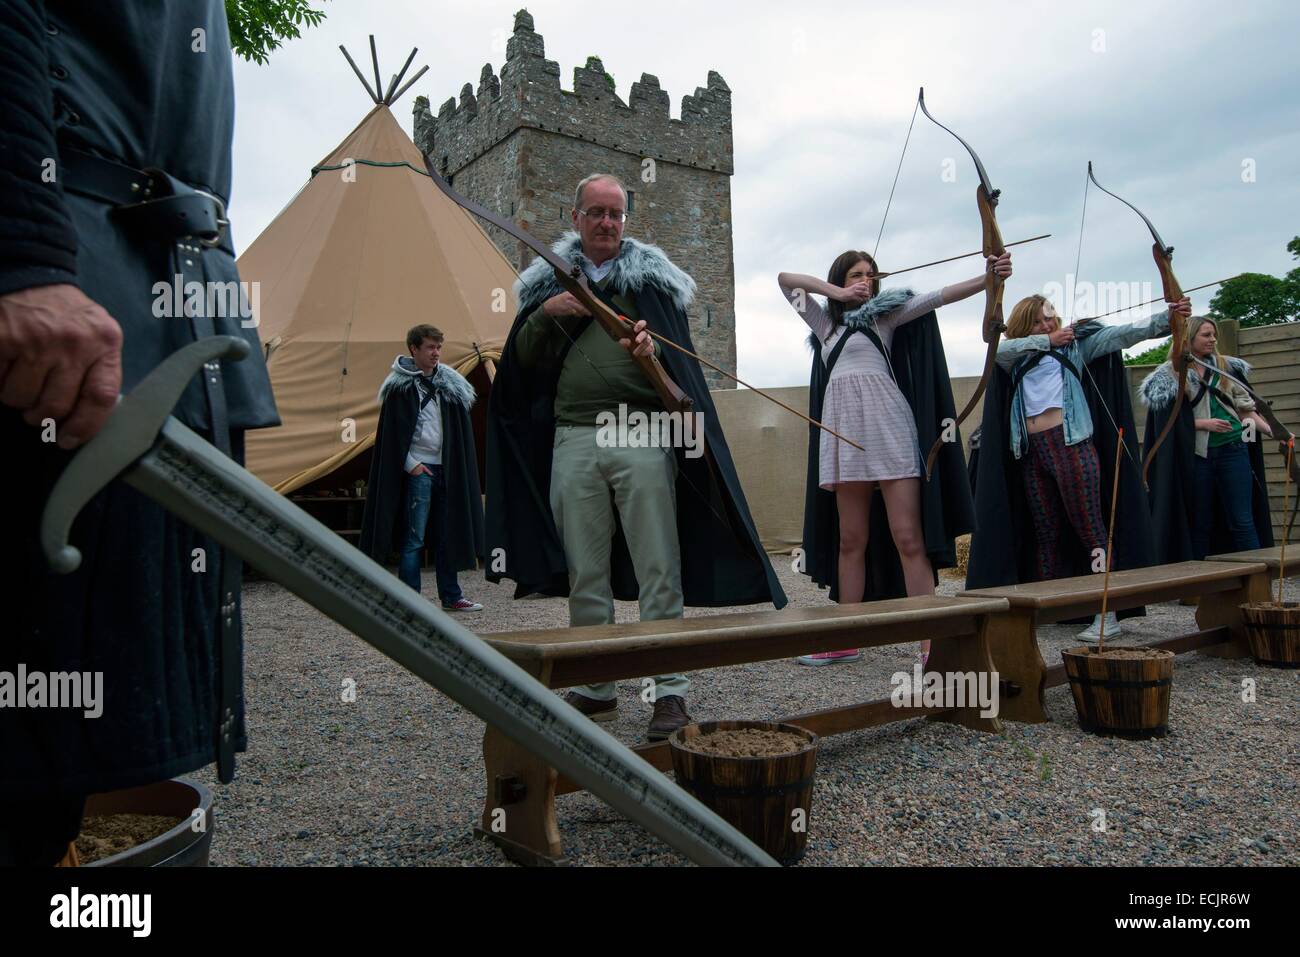 Regno Unito e Irlanda del Nord, County Down, Strangford, il meditabondo del xviii secolo Castle Ward nella contea di Down può essere a voi familiare come Winterfell, affacciato Strangford Lough, questa è la casa di Stark dove Ned ha salutato King Robert sul suo arrivo, Re Foto Stock